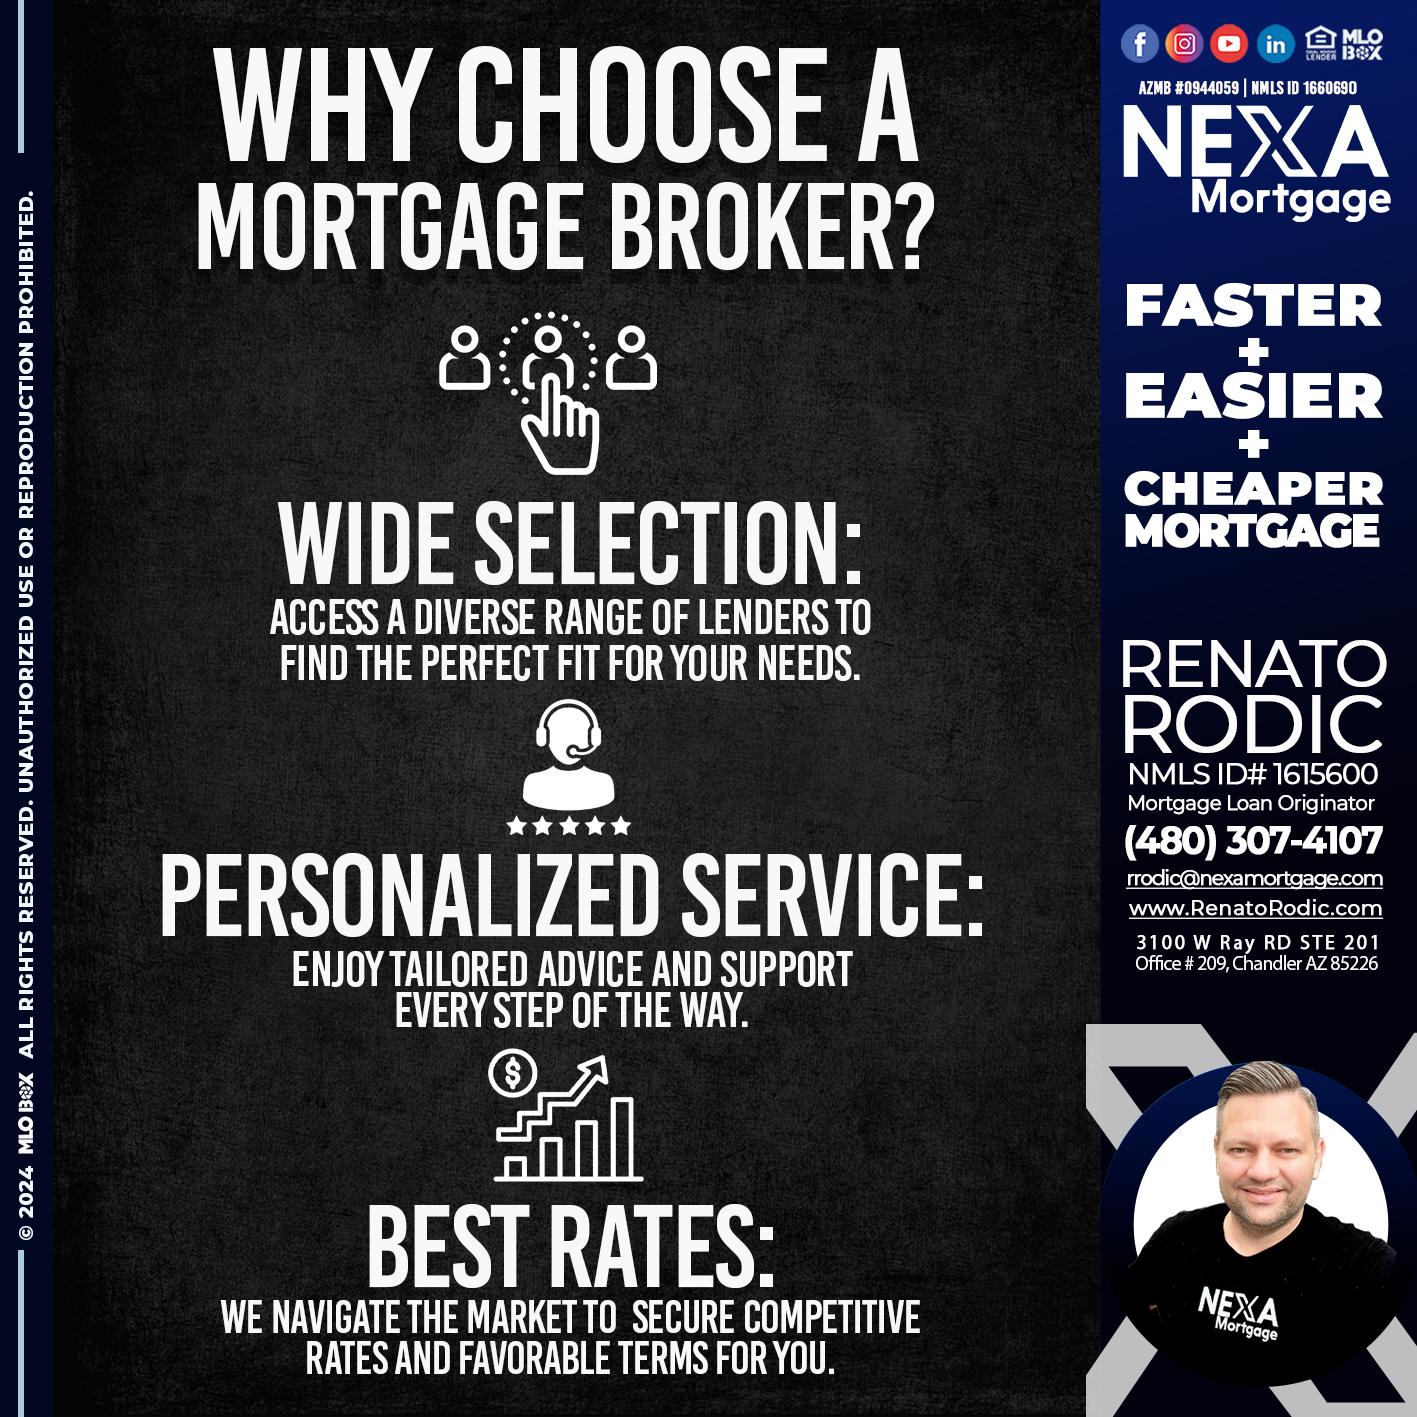 WHY CHOOSE - Renato Rodic -Mortgage Loan Originator